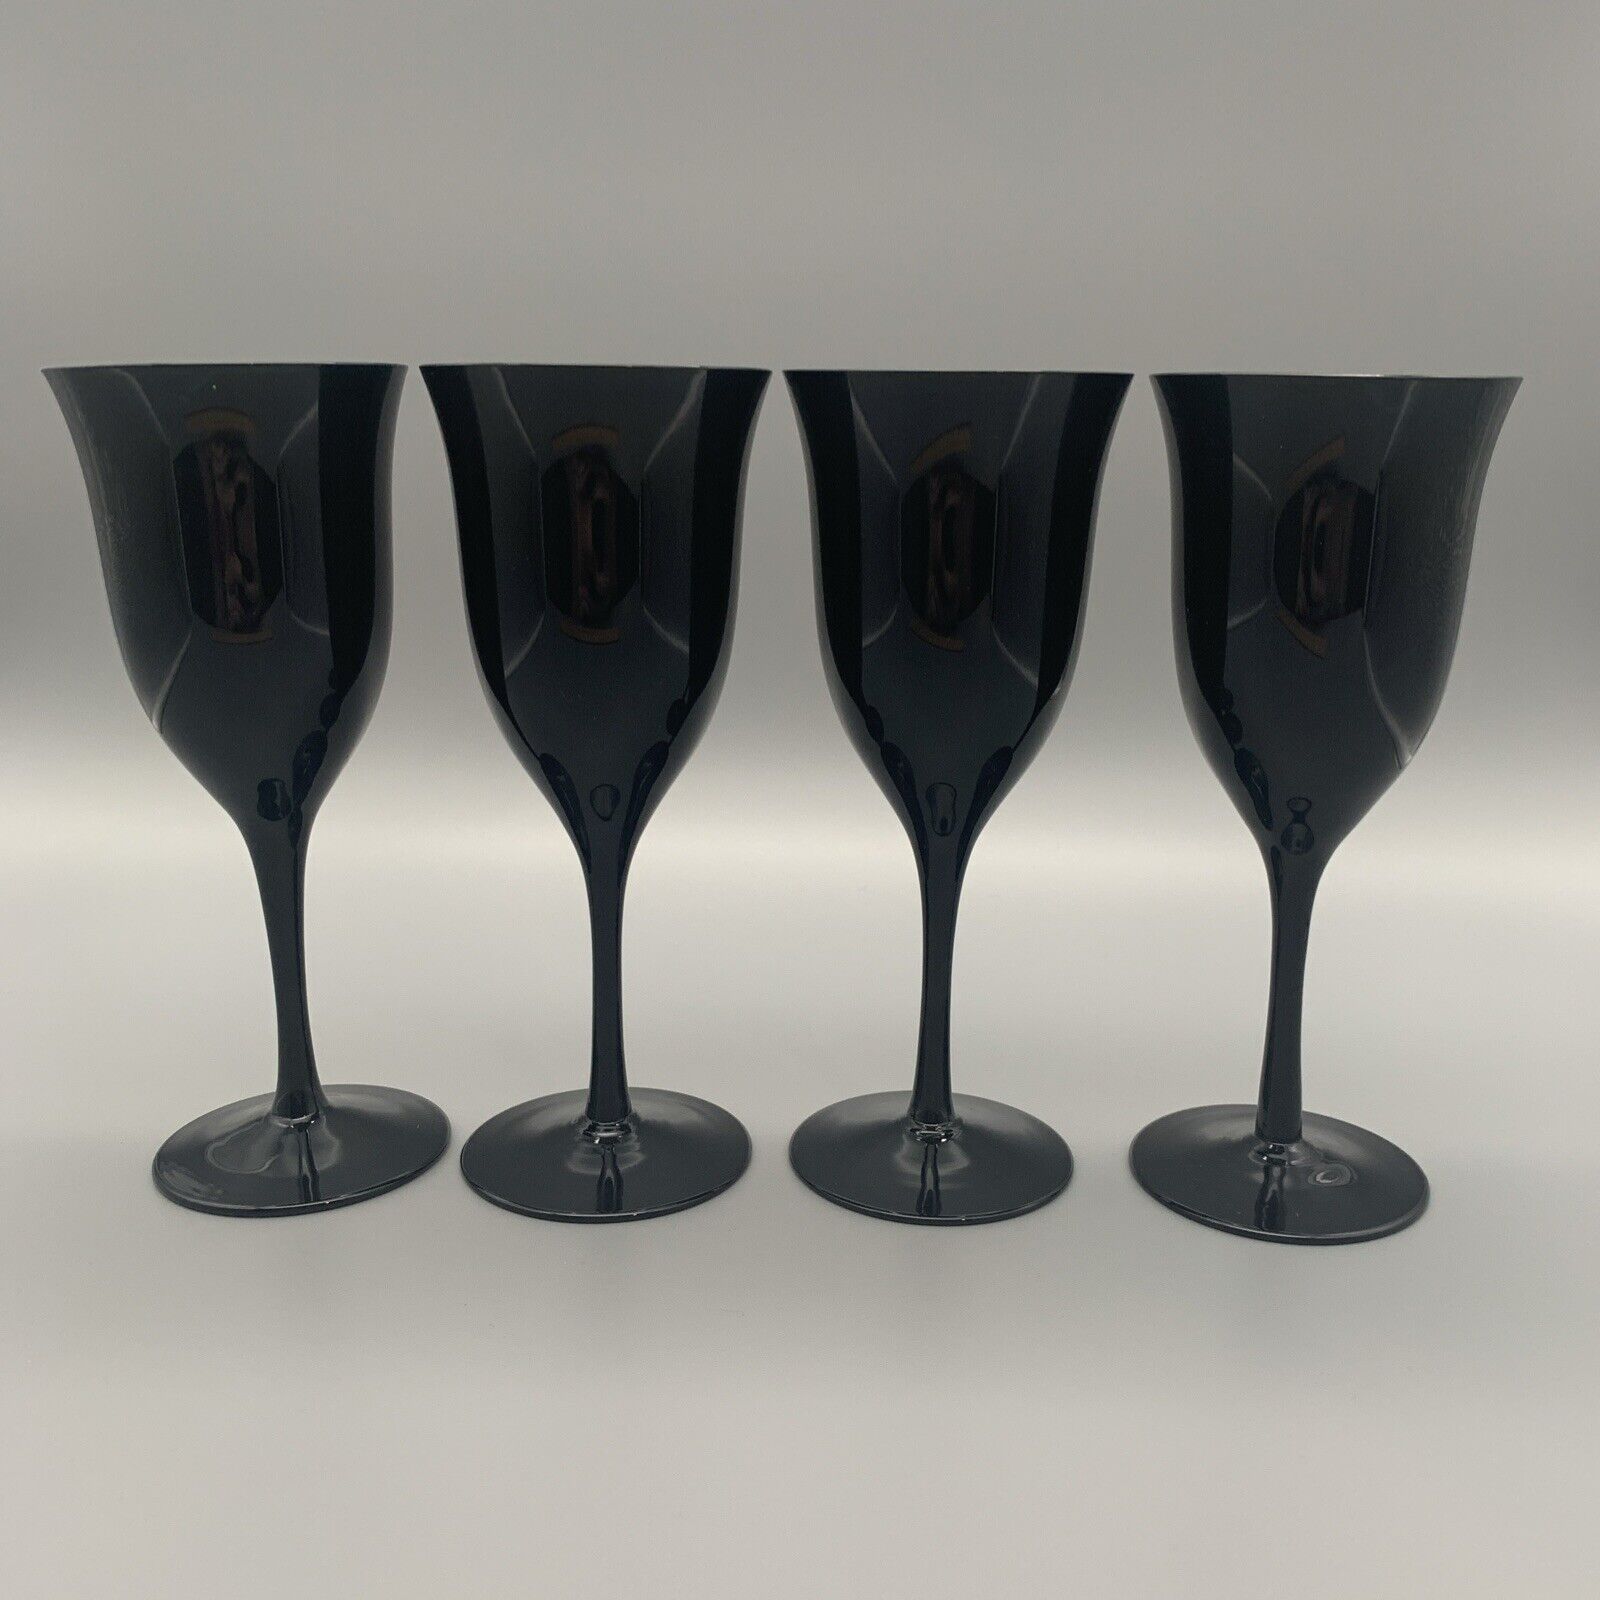 Vintage Carico Lead Crystal Wine Glasses Set Of 4 Black Mystique Tivoli 7.25”